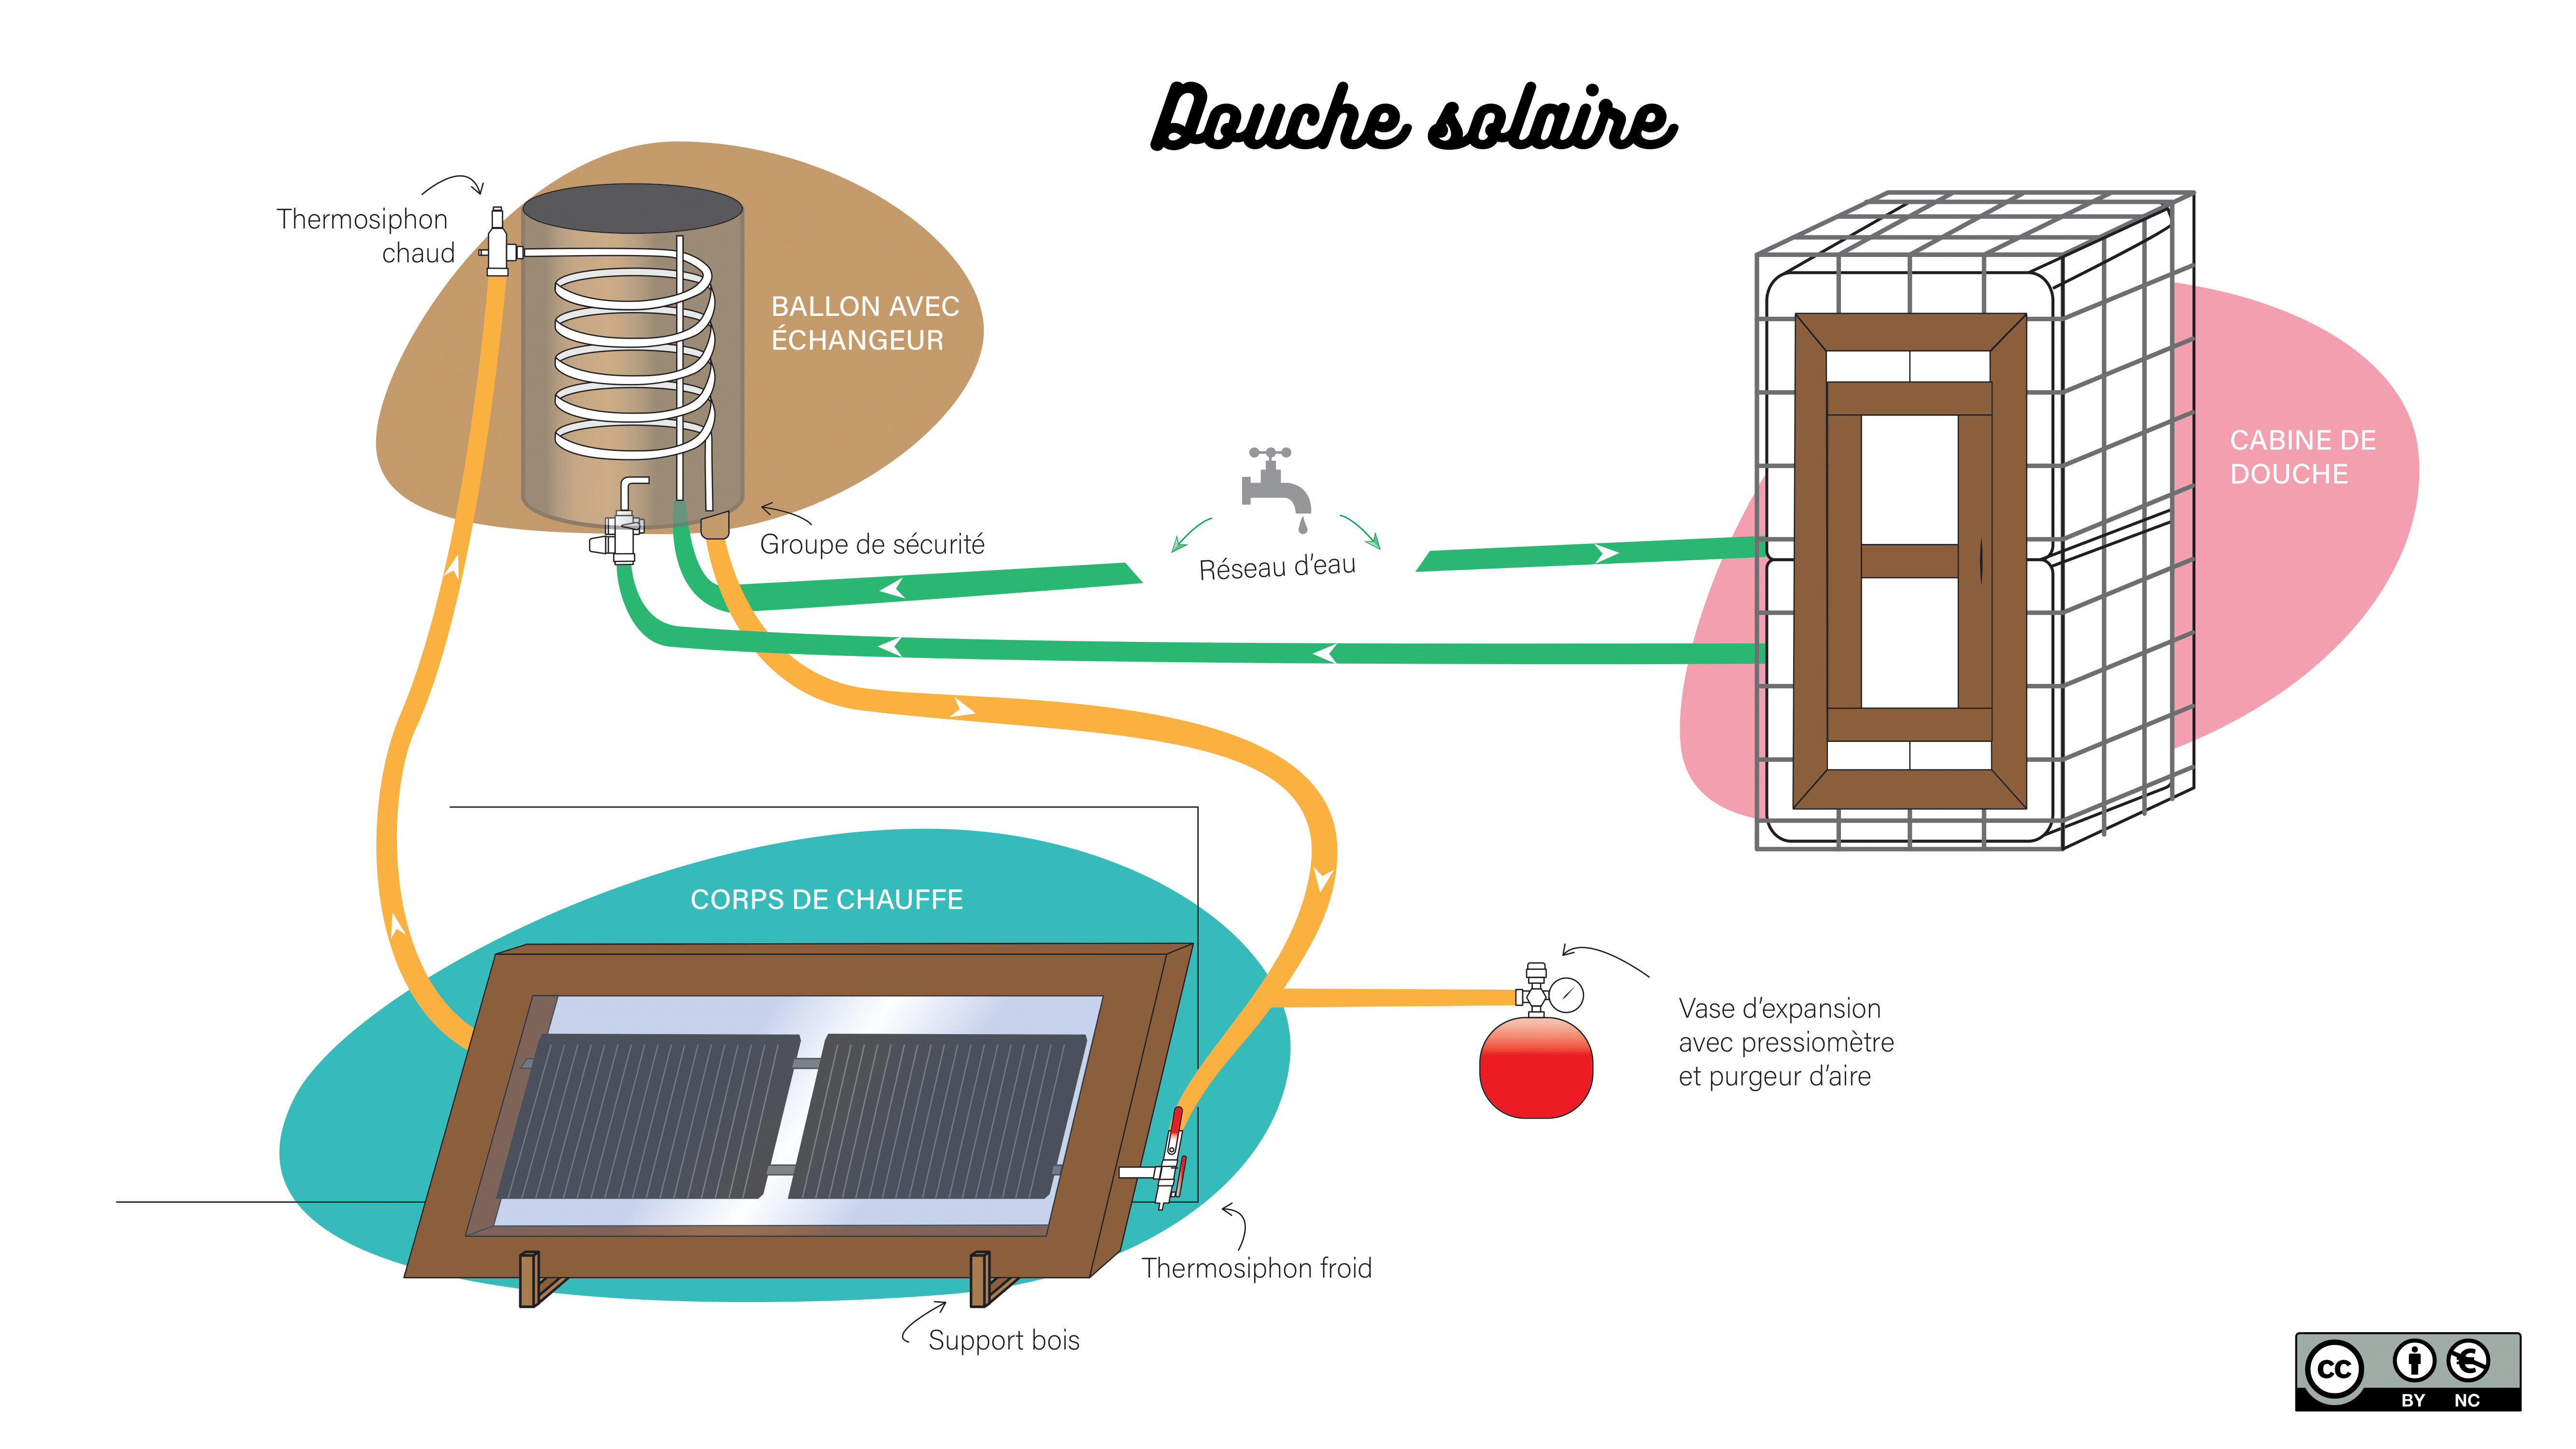 Douche solaire partir de 2 radiateurs schema chauffe eau total4 1 -1.png